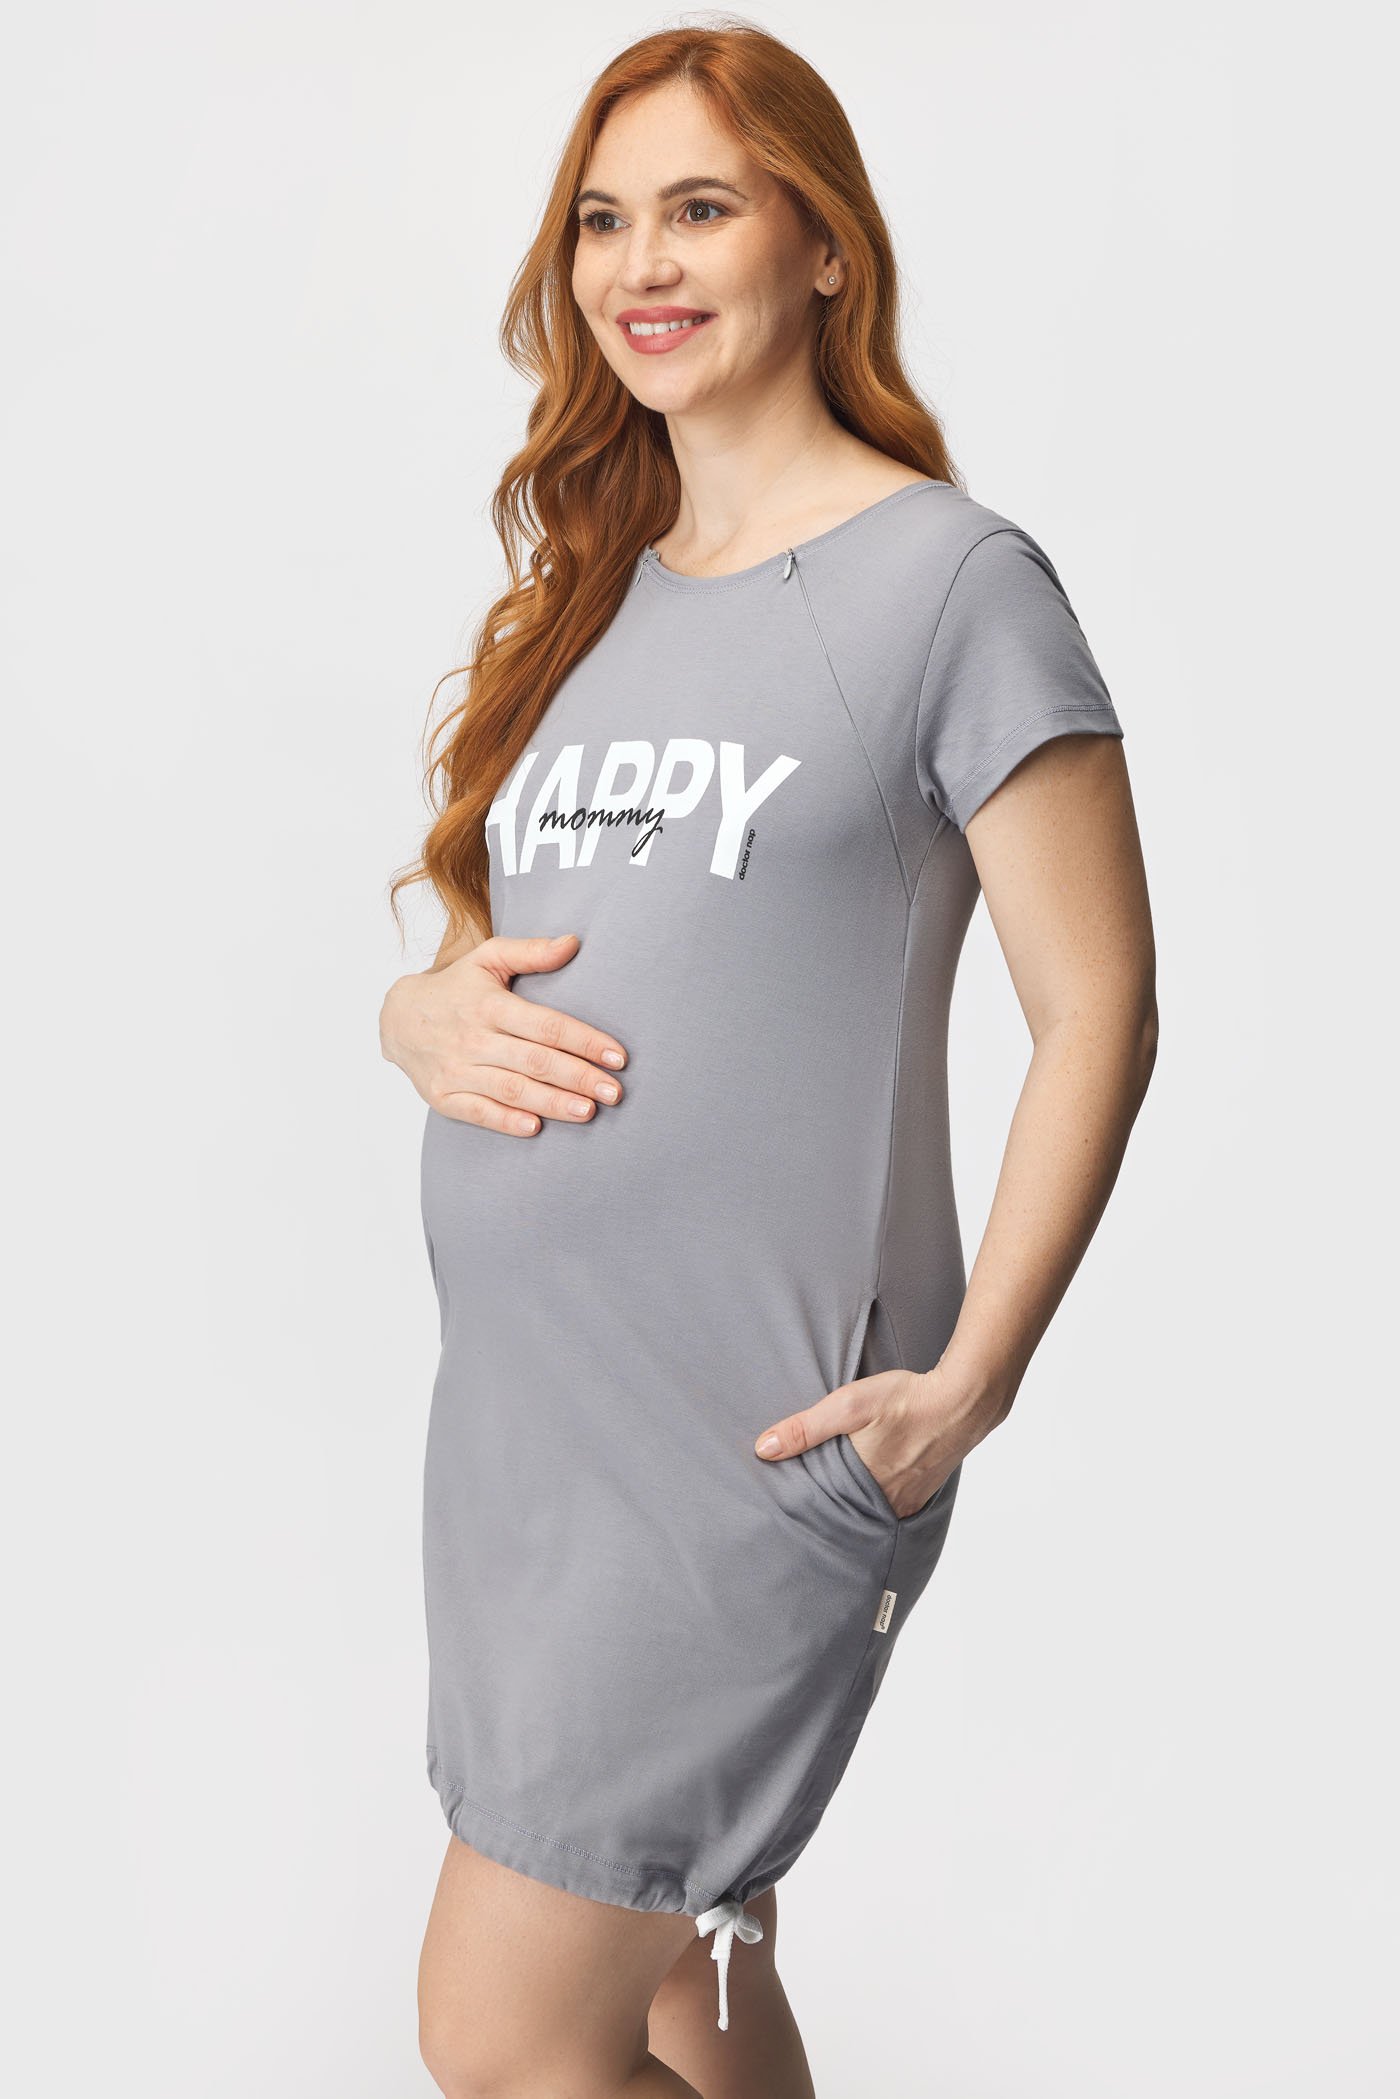 Schwangerschafts- und Still-Nachthemd Happy Mommy Grau | Astratex.de